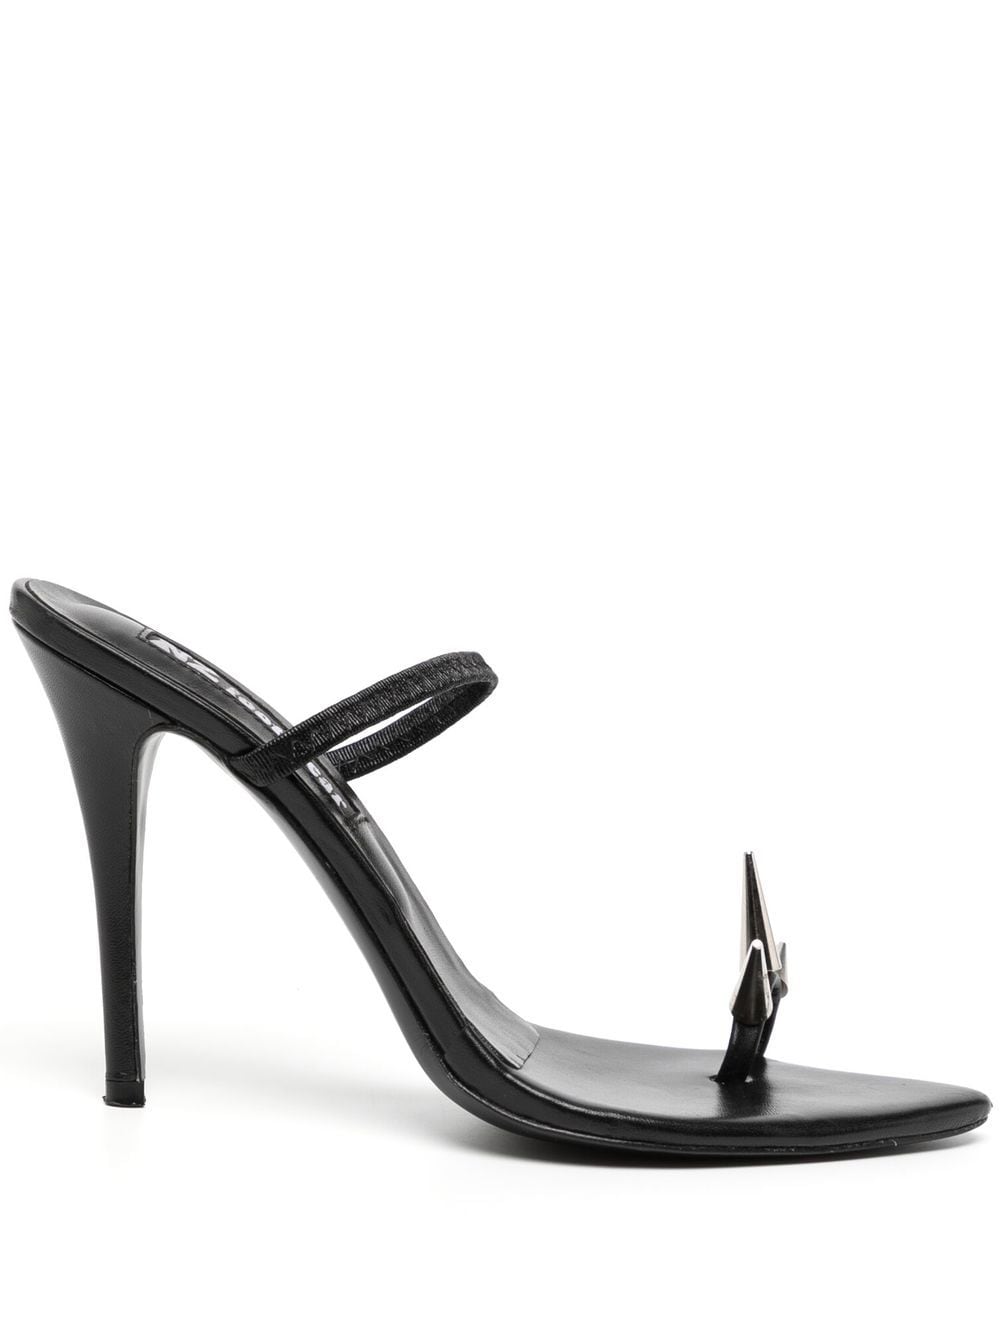 Natasha Zinko spike-toe heeled sandals - Black von Natasha Zinko